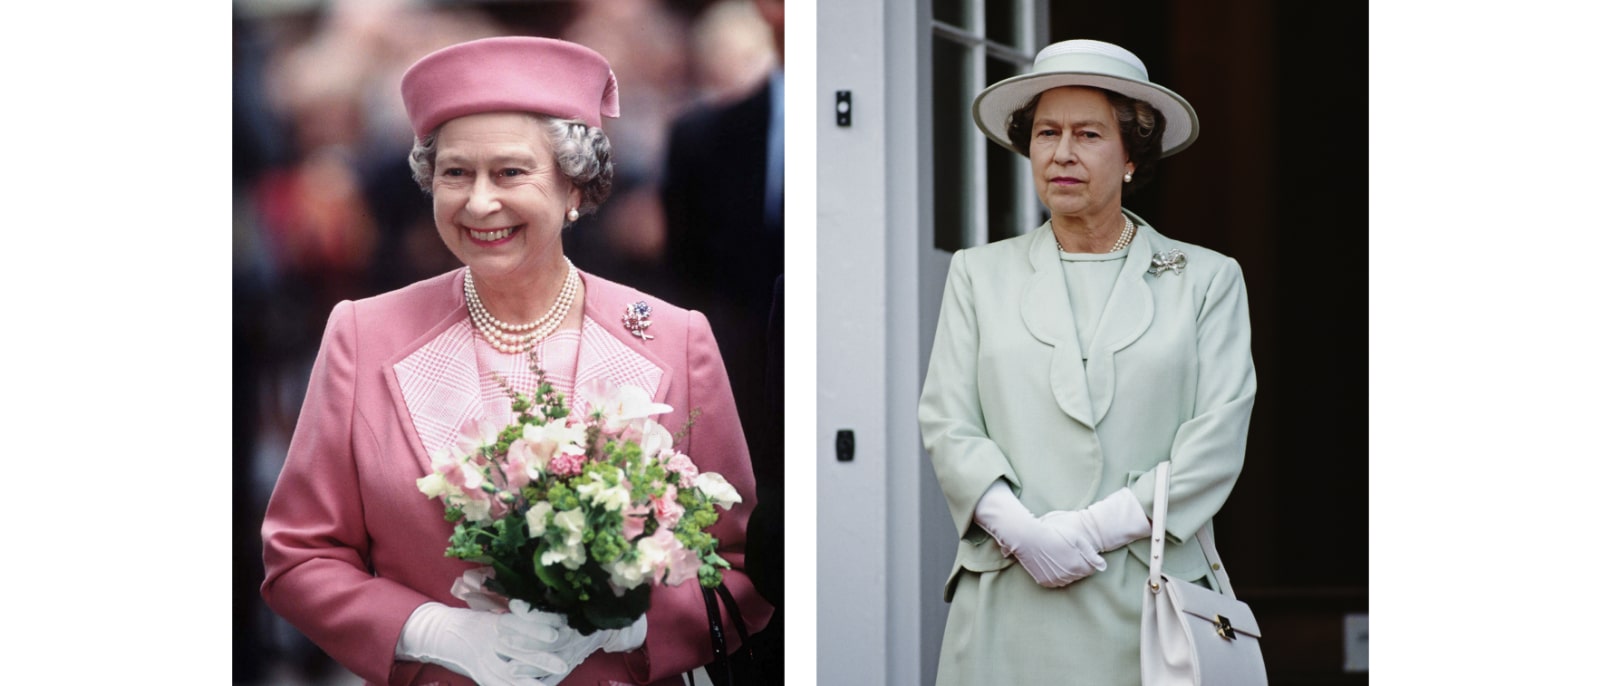 Reiss - Celebrates Queen Elizabeth II